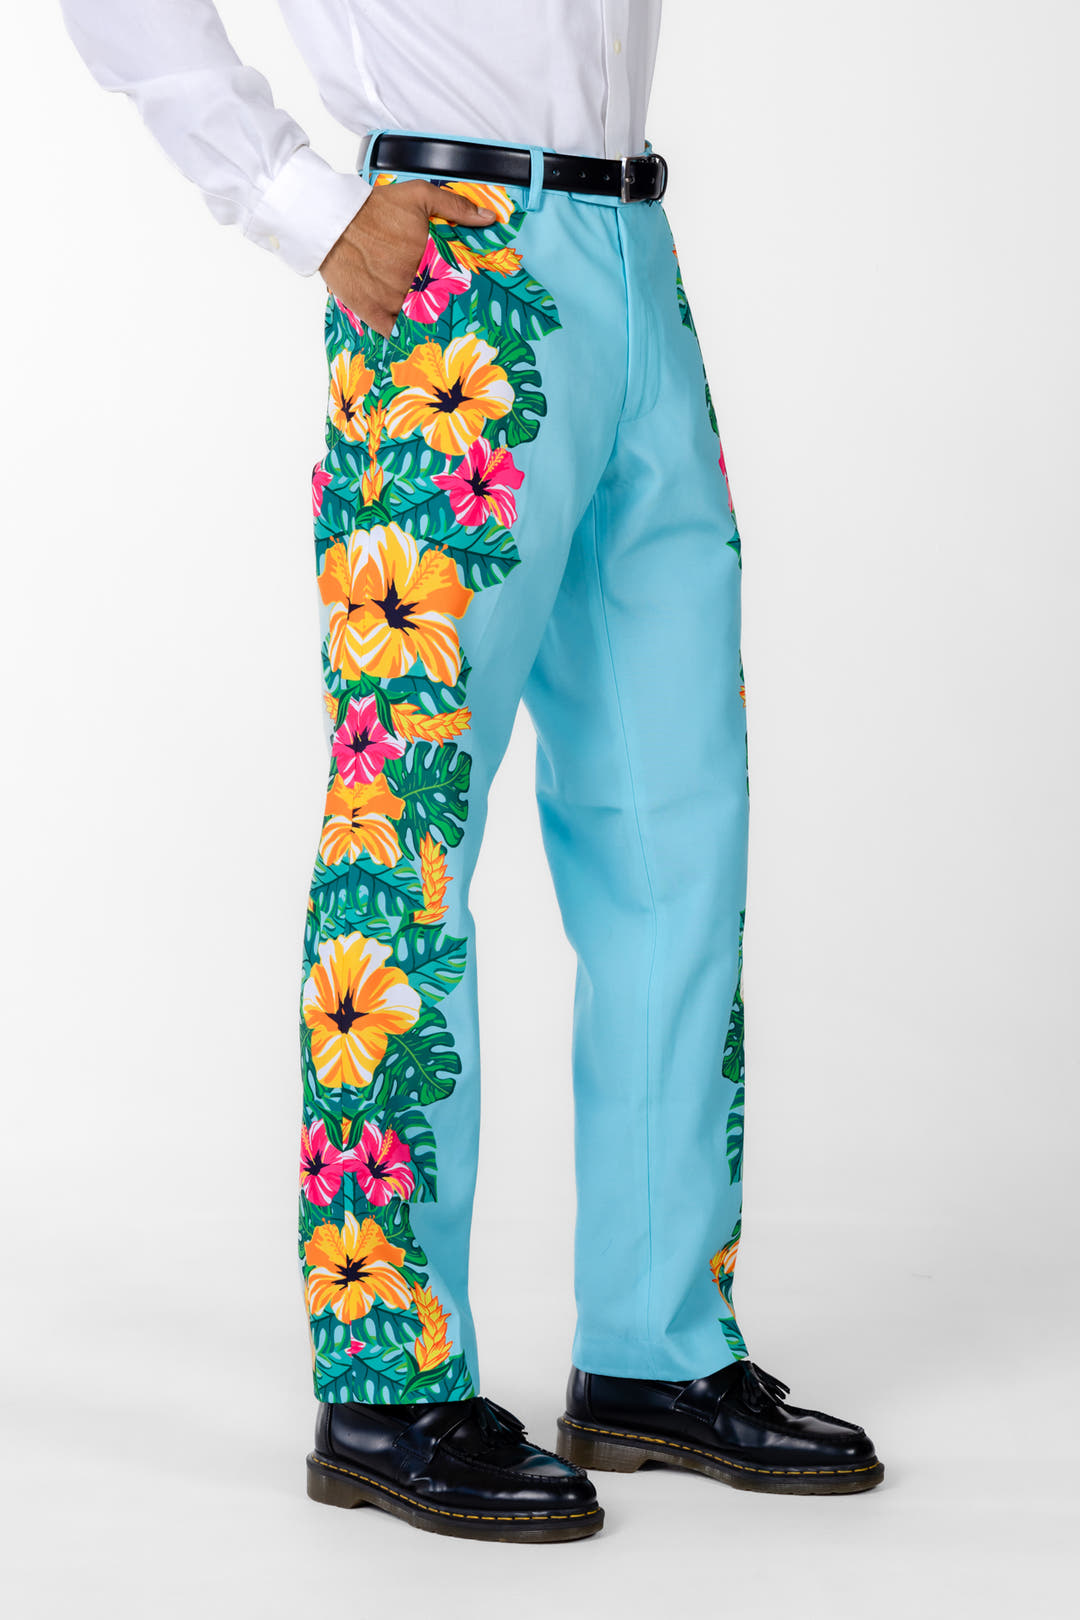 Floral Hawaiian Men's Suit | The Hibiscus Honeymoon